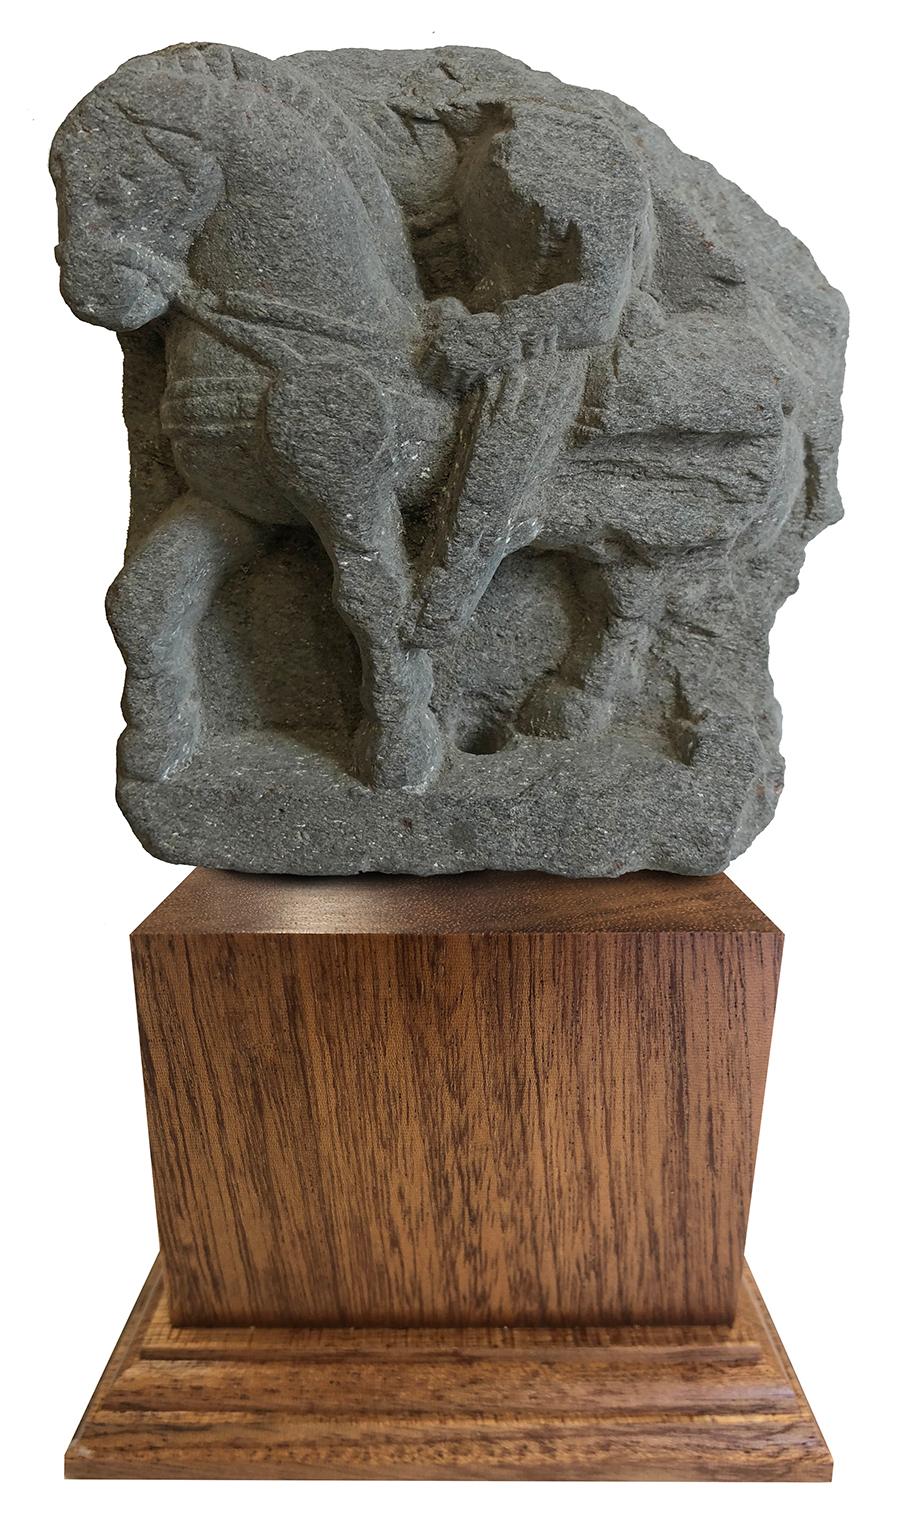 Unknown Figurative Sculpture - Fragment Prince Siddhartha Sculpture - Grey Schist